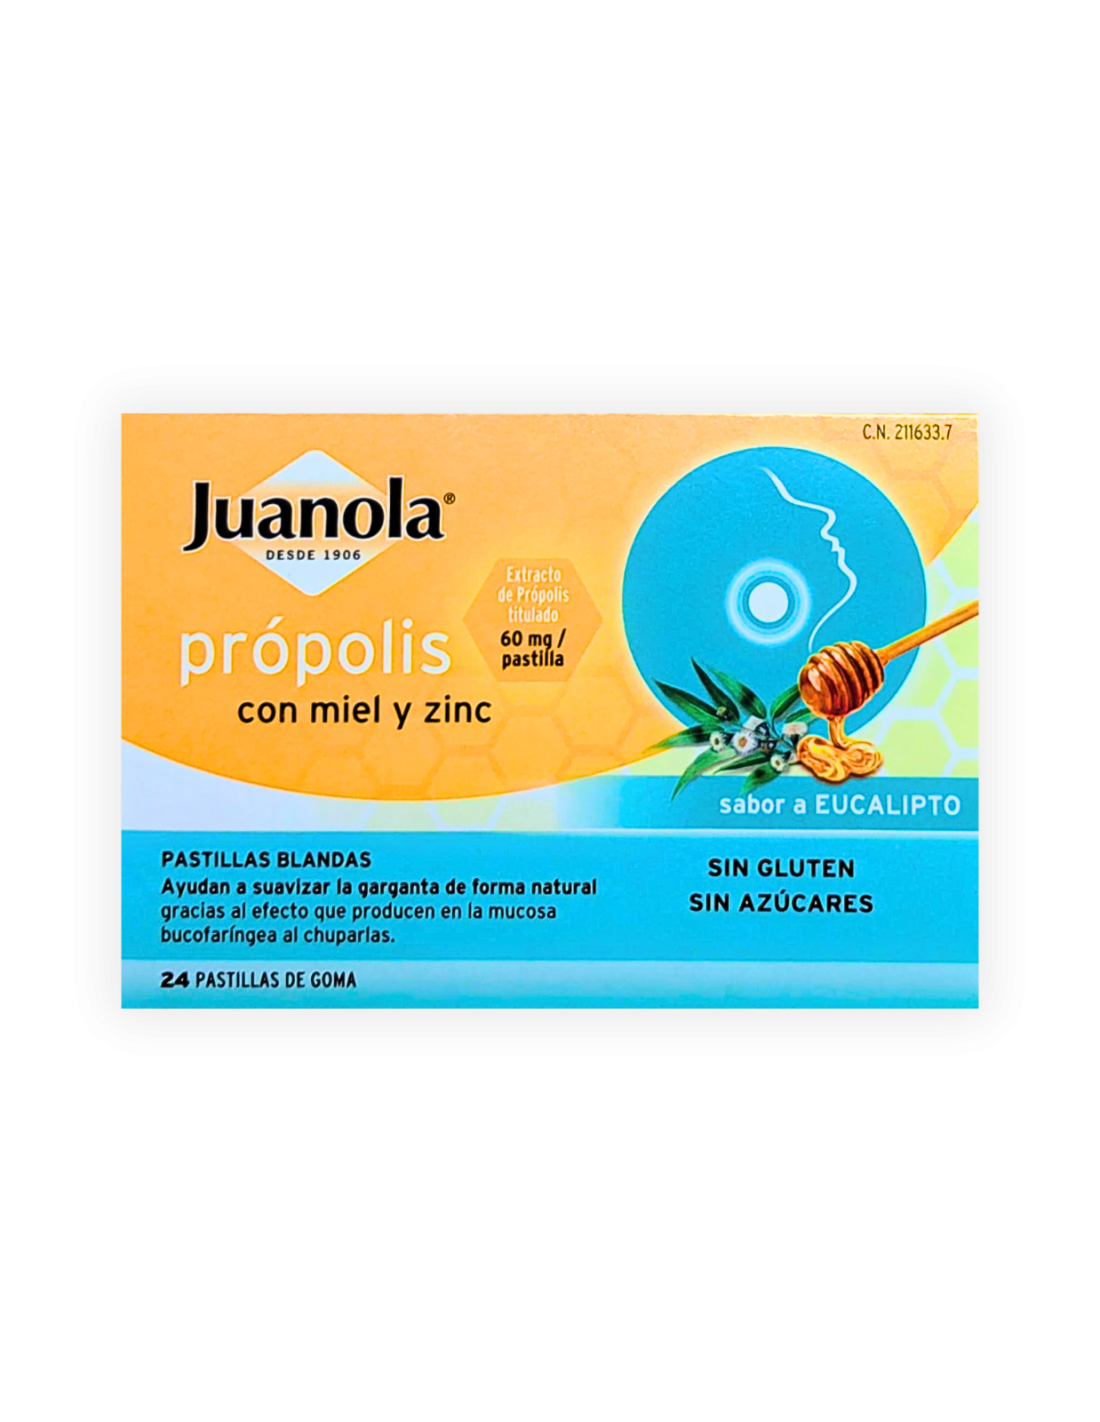 Comprar Juanola Propolis Limon-Miel ¡Mejor Precio!